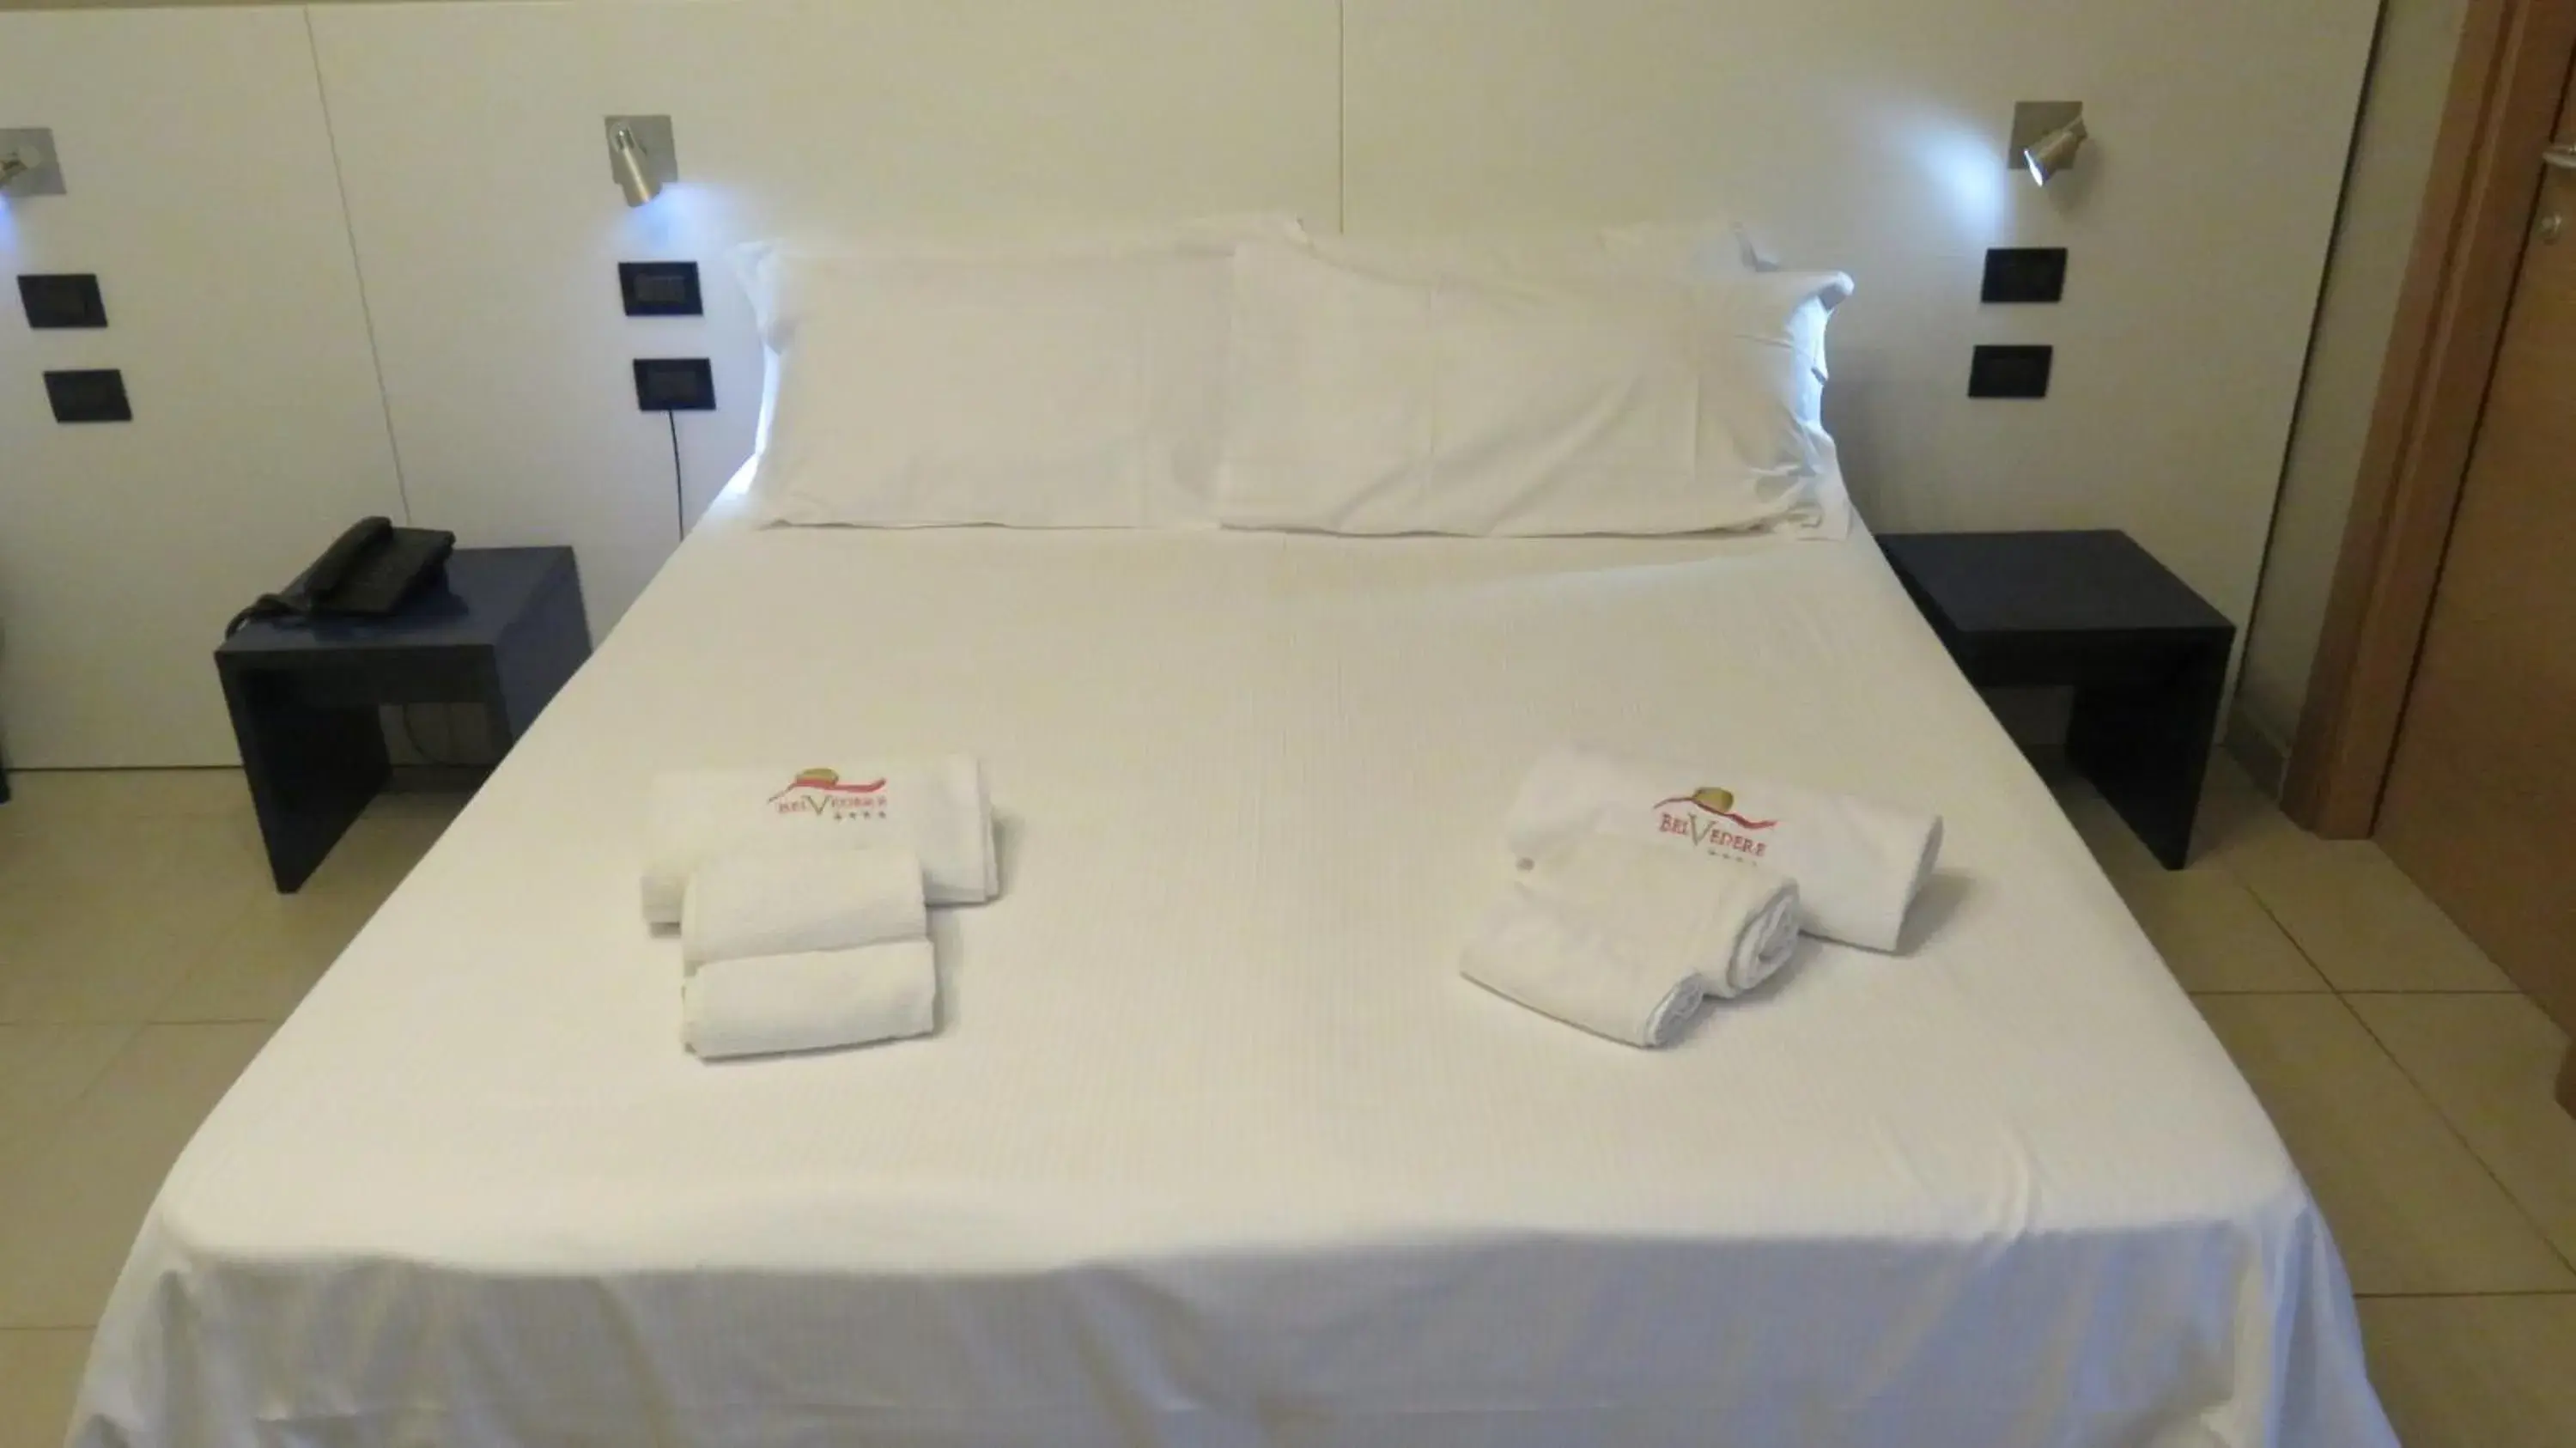 Bed in Hotel Belvedere